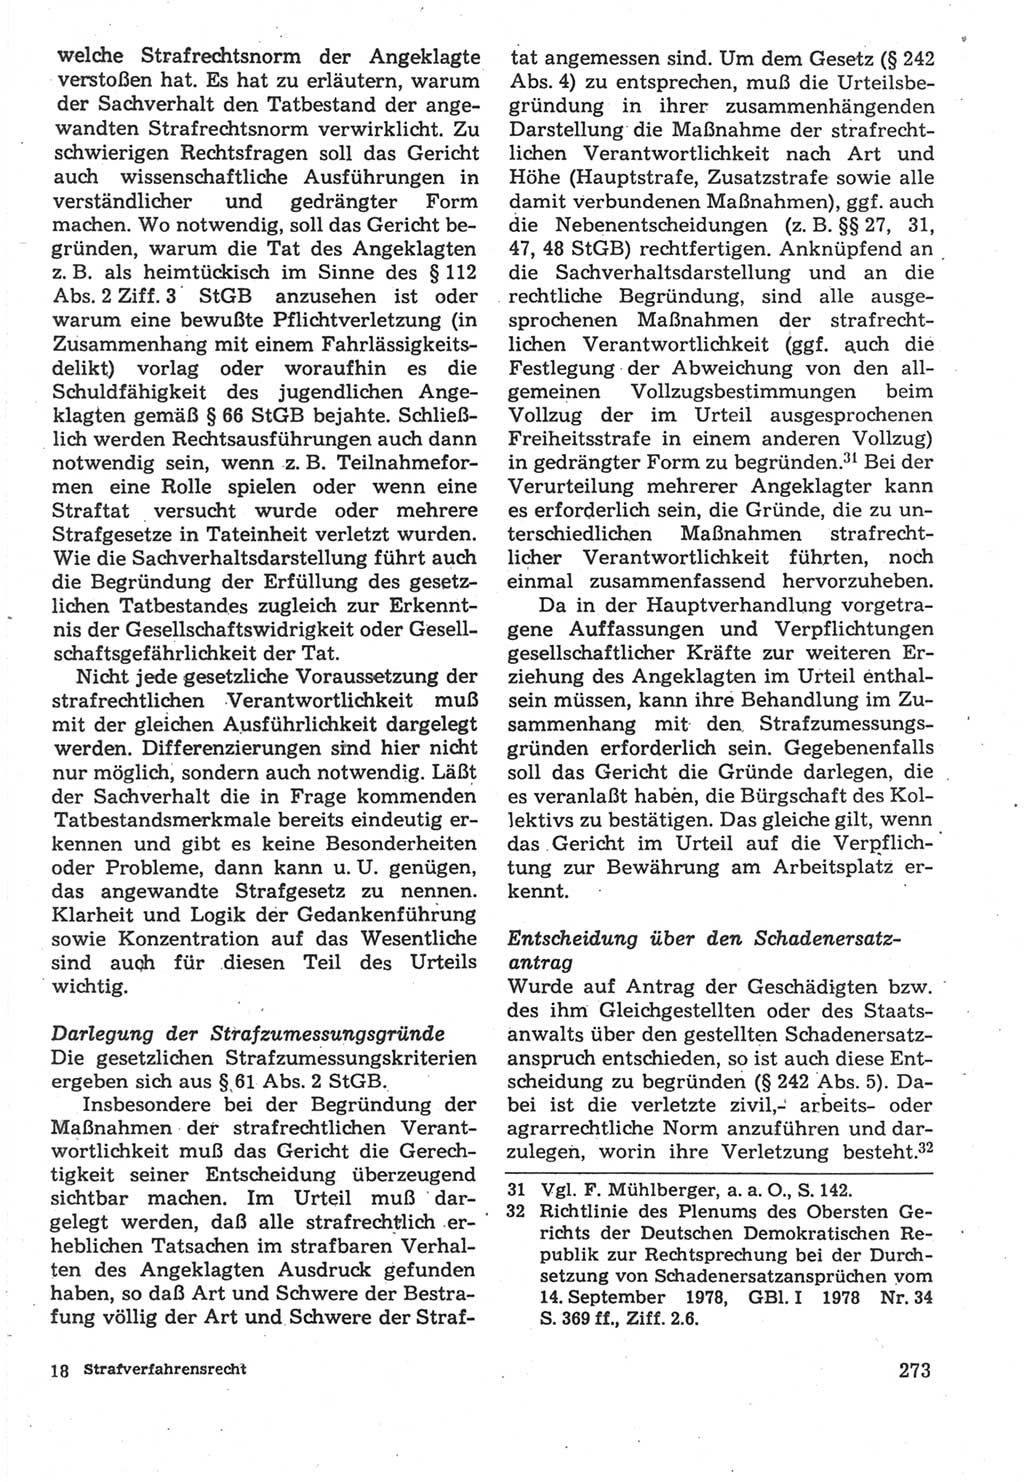 Strafverfahrensrecht [Deutsche Demokratische Republik (DDR)], Lehrbuch 1987, Seite 273 (Strafverf.-R. DDR Lb. 1987, S. 273)